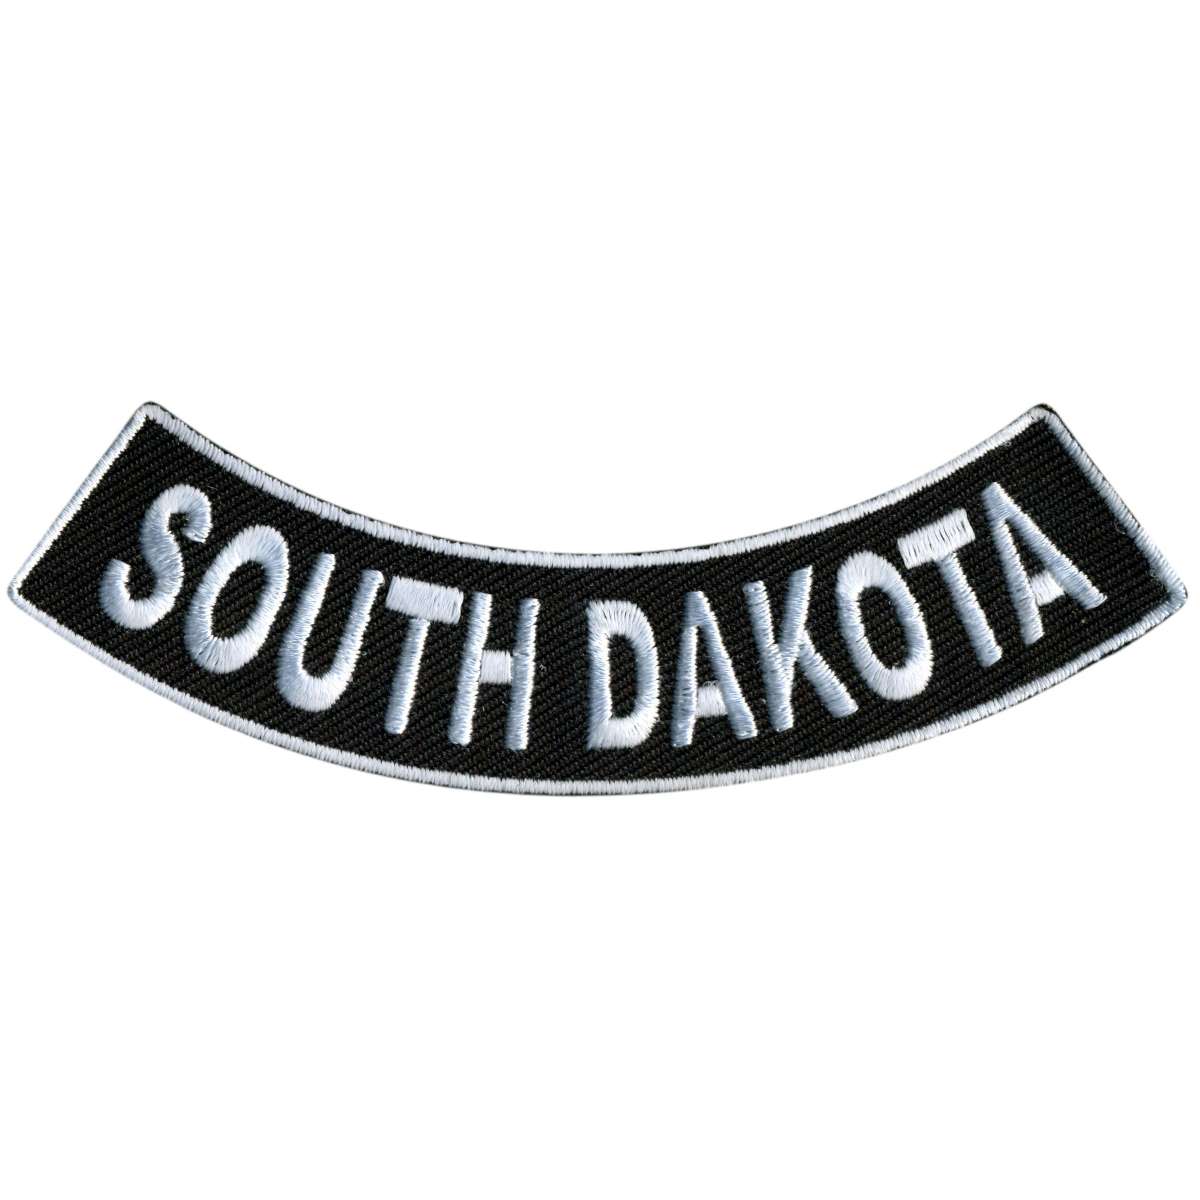 Hot Leathers South Dakota 4” X 1” Bottom Rocker Patch PPM5082